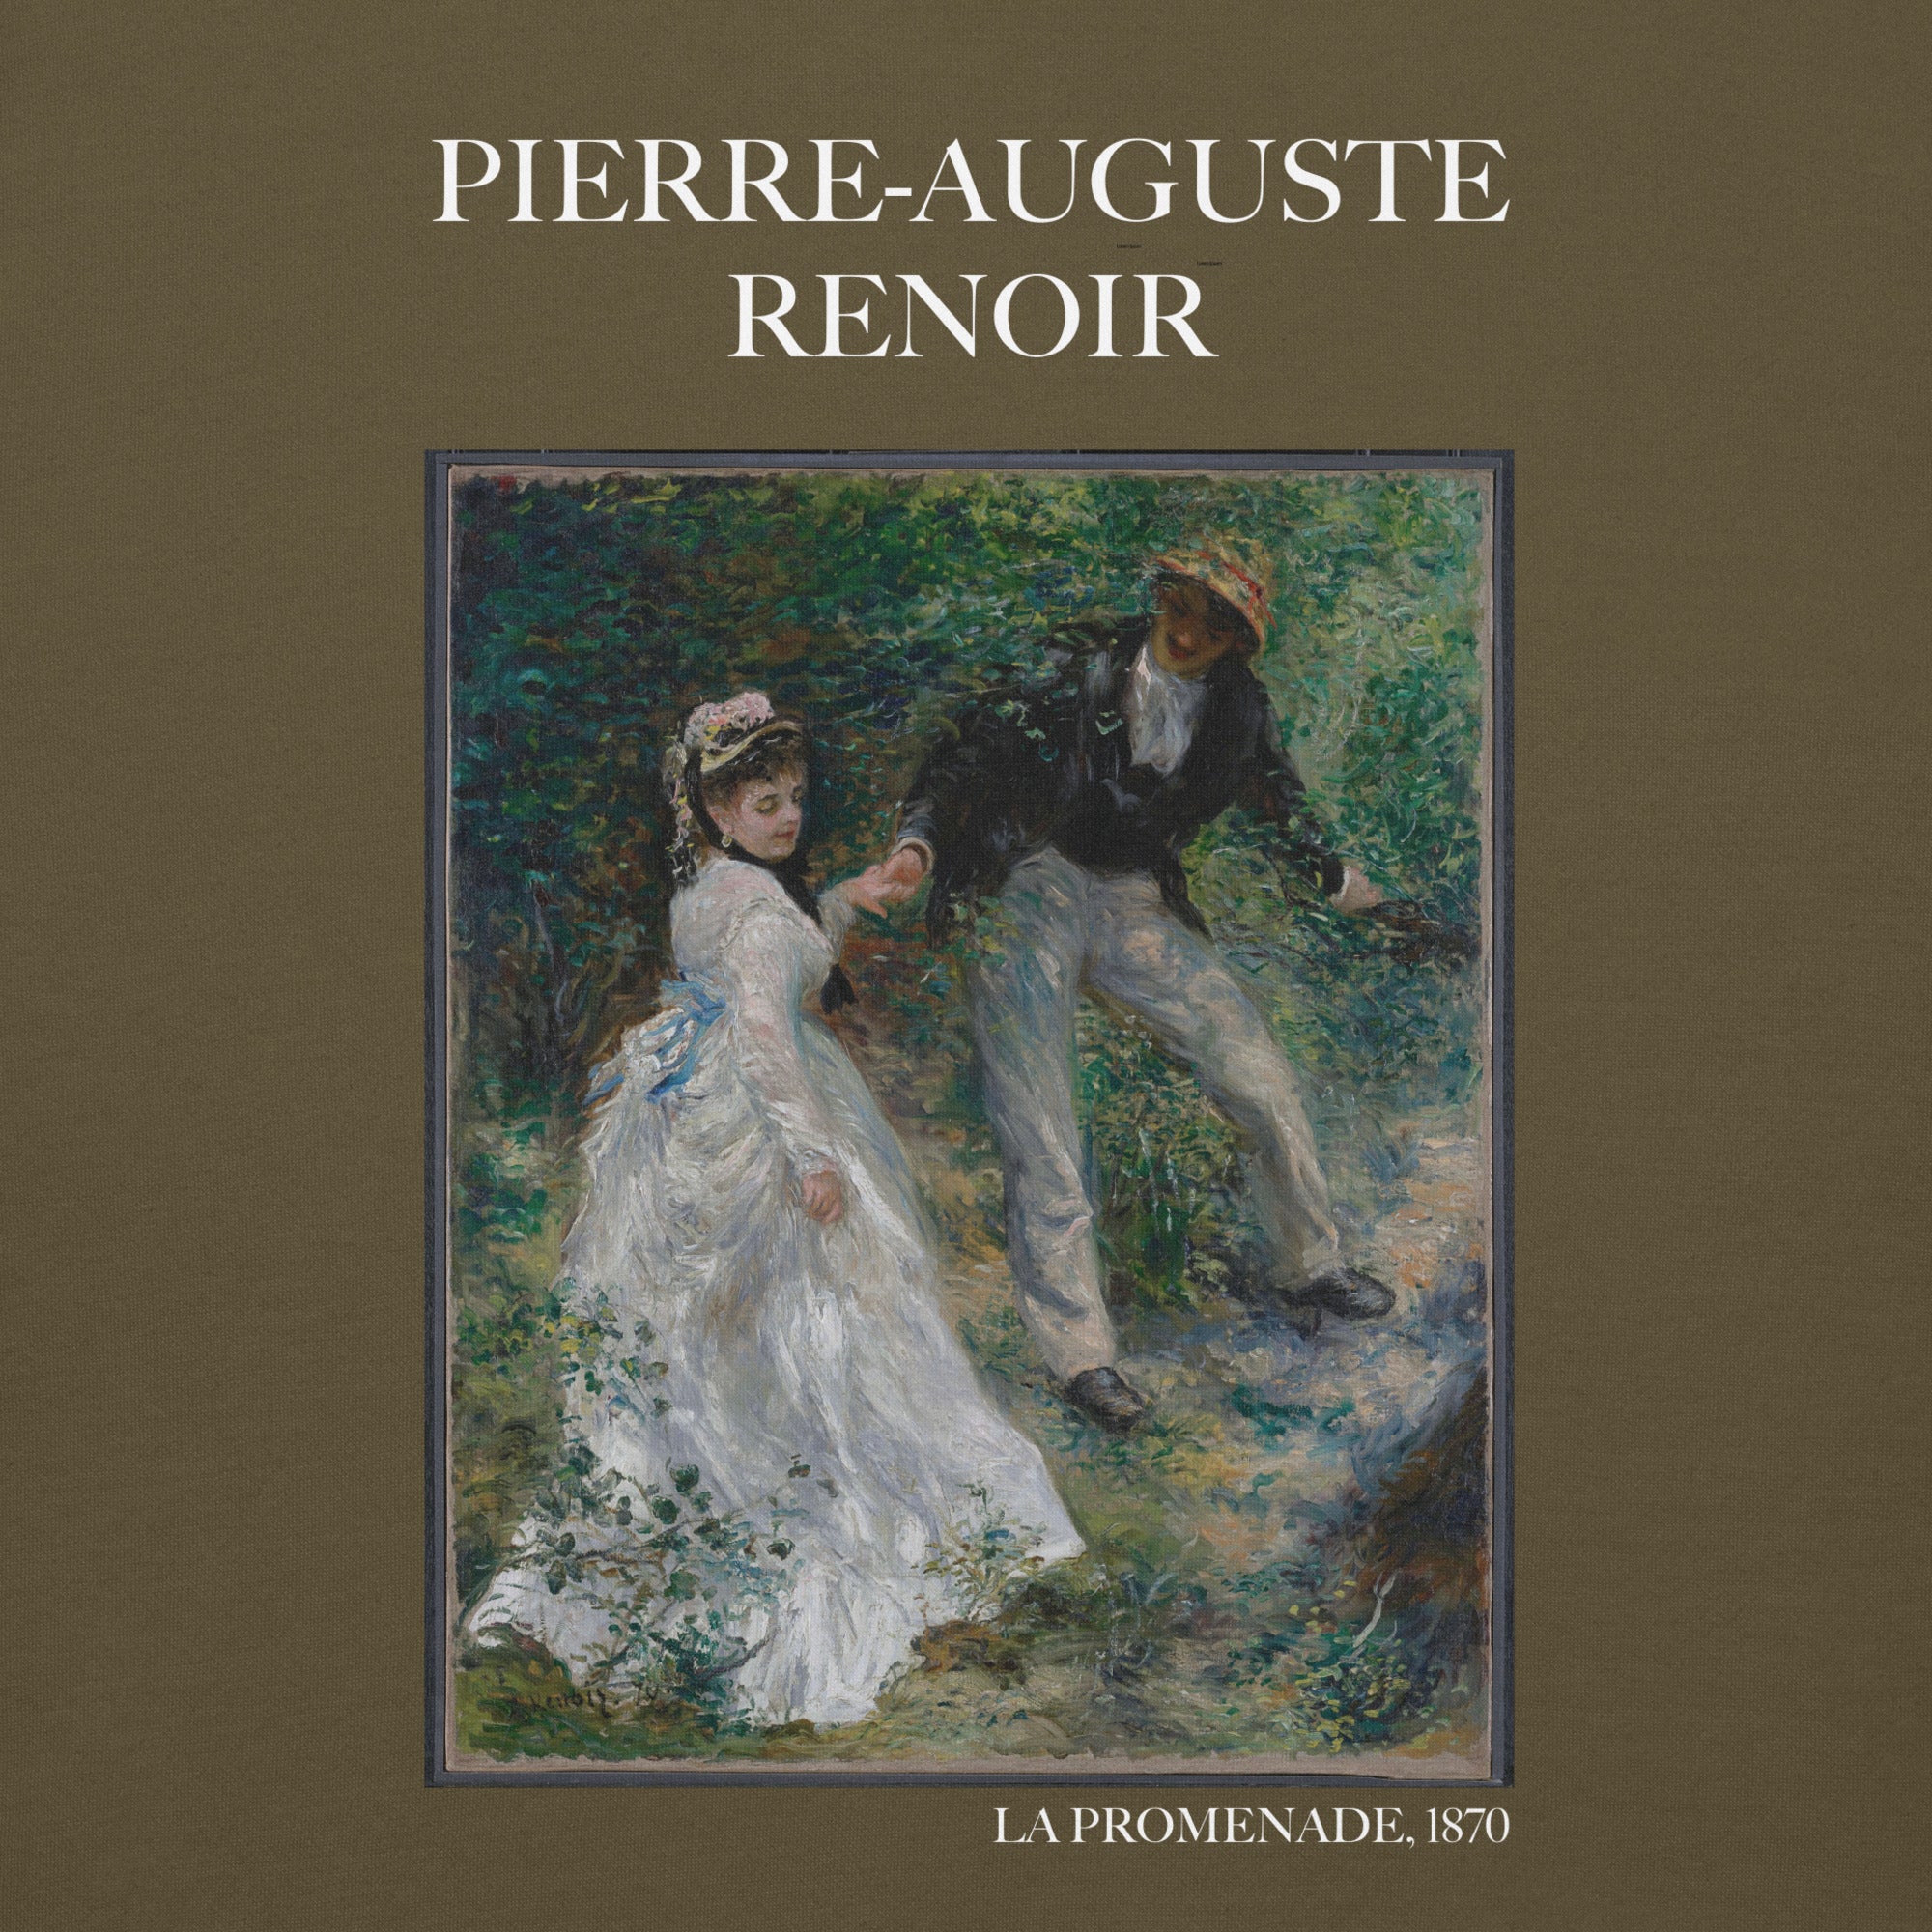 Pierre-Auguste Renoir 'La Promenade' Famous Painting Hoodie | Unisex Premium Art Hoodie